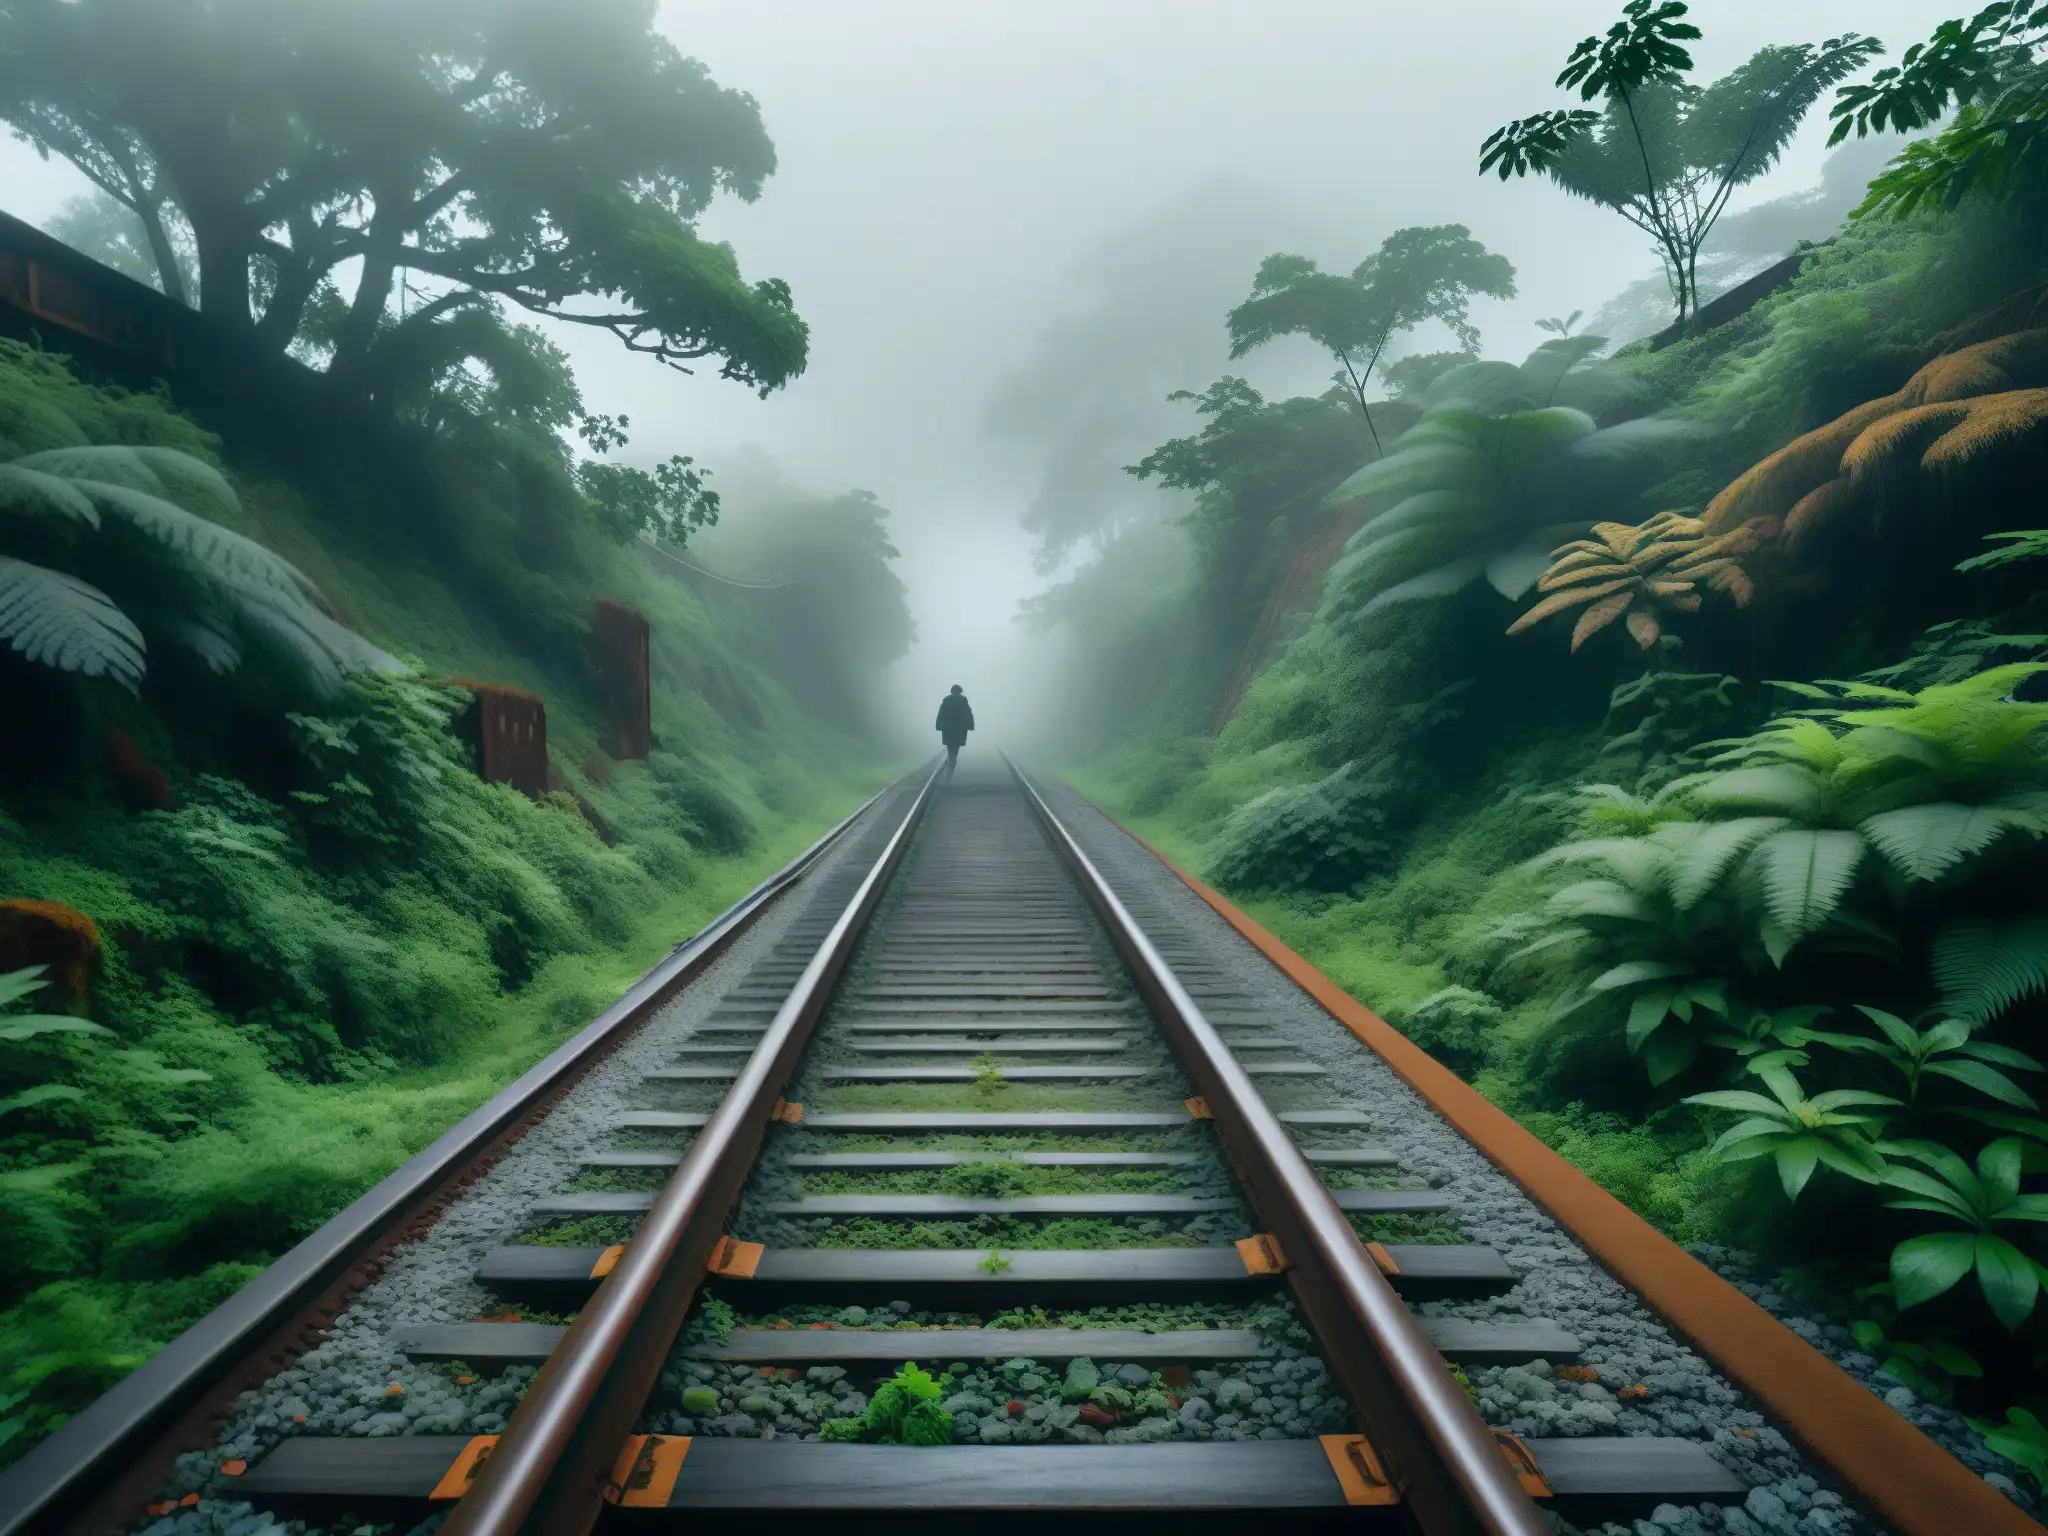 Tren fantasma Bishan: Vías oxidadas se pierden en la niebla de un bosque misterioso, evocando su enigmática historia